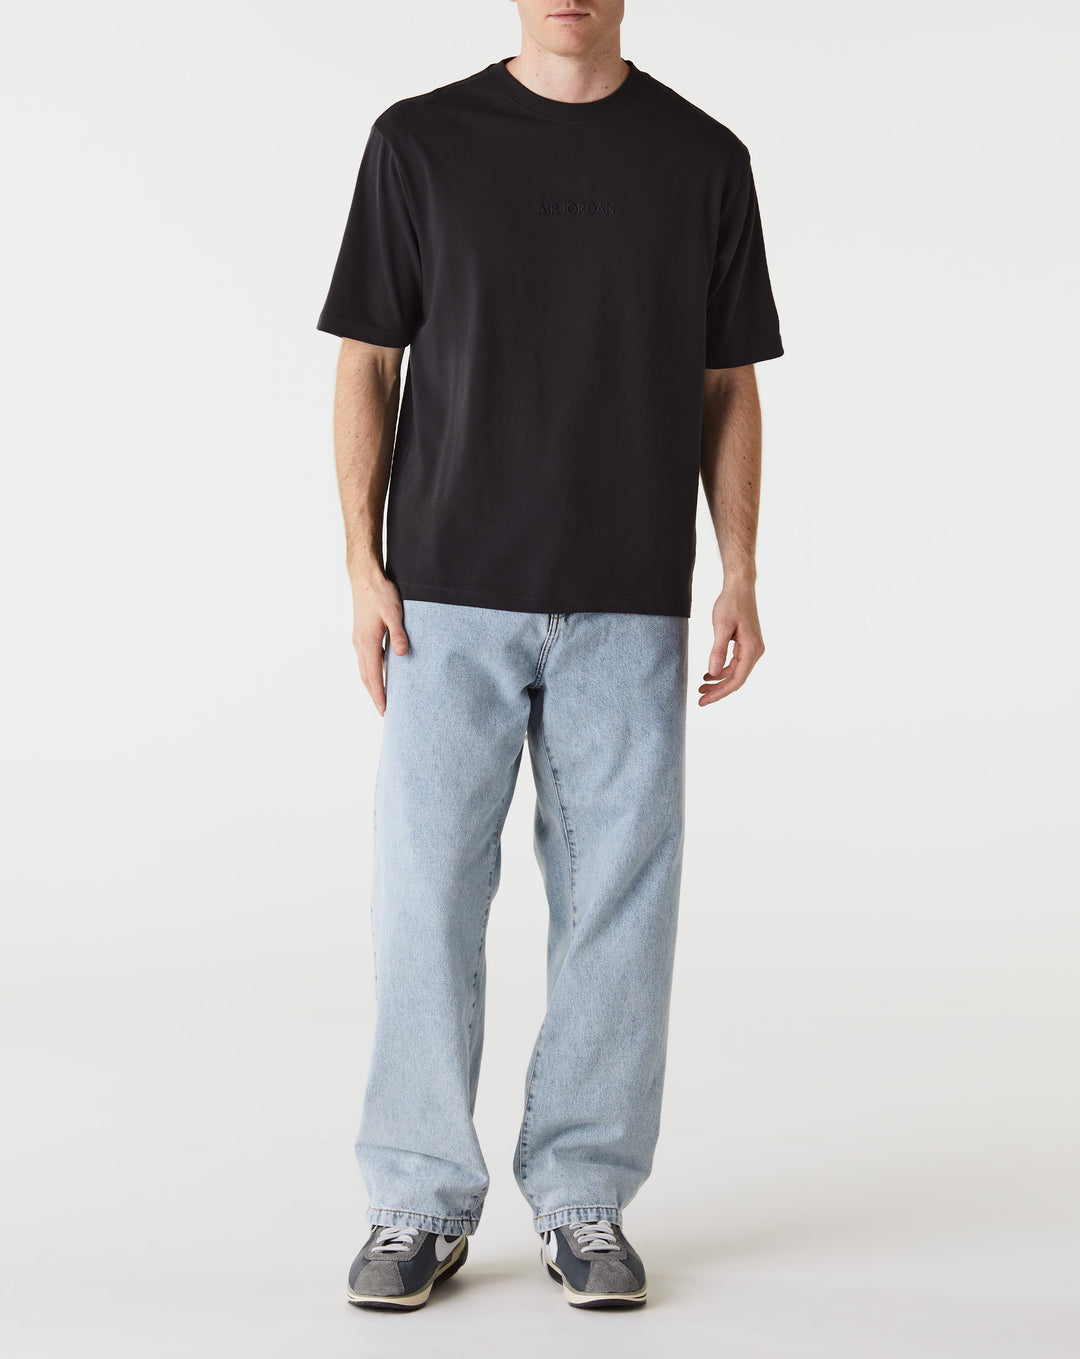 Air Jordan Woodmark T-Shirt  - XHIBITION